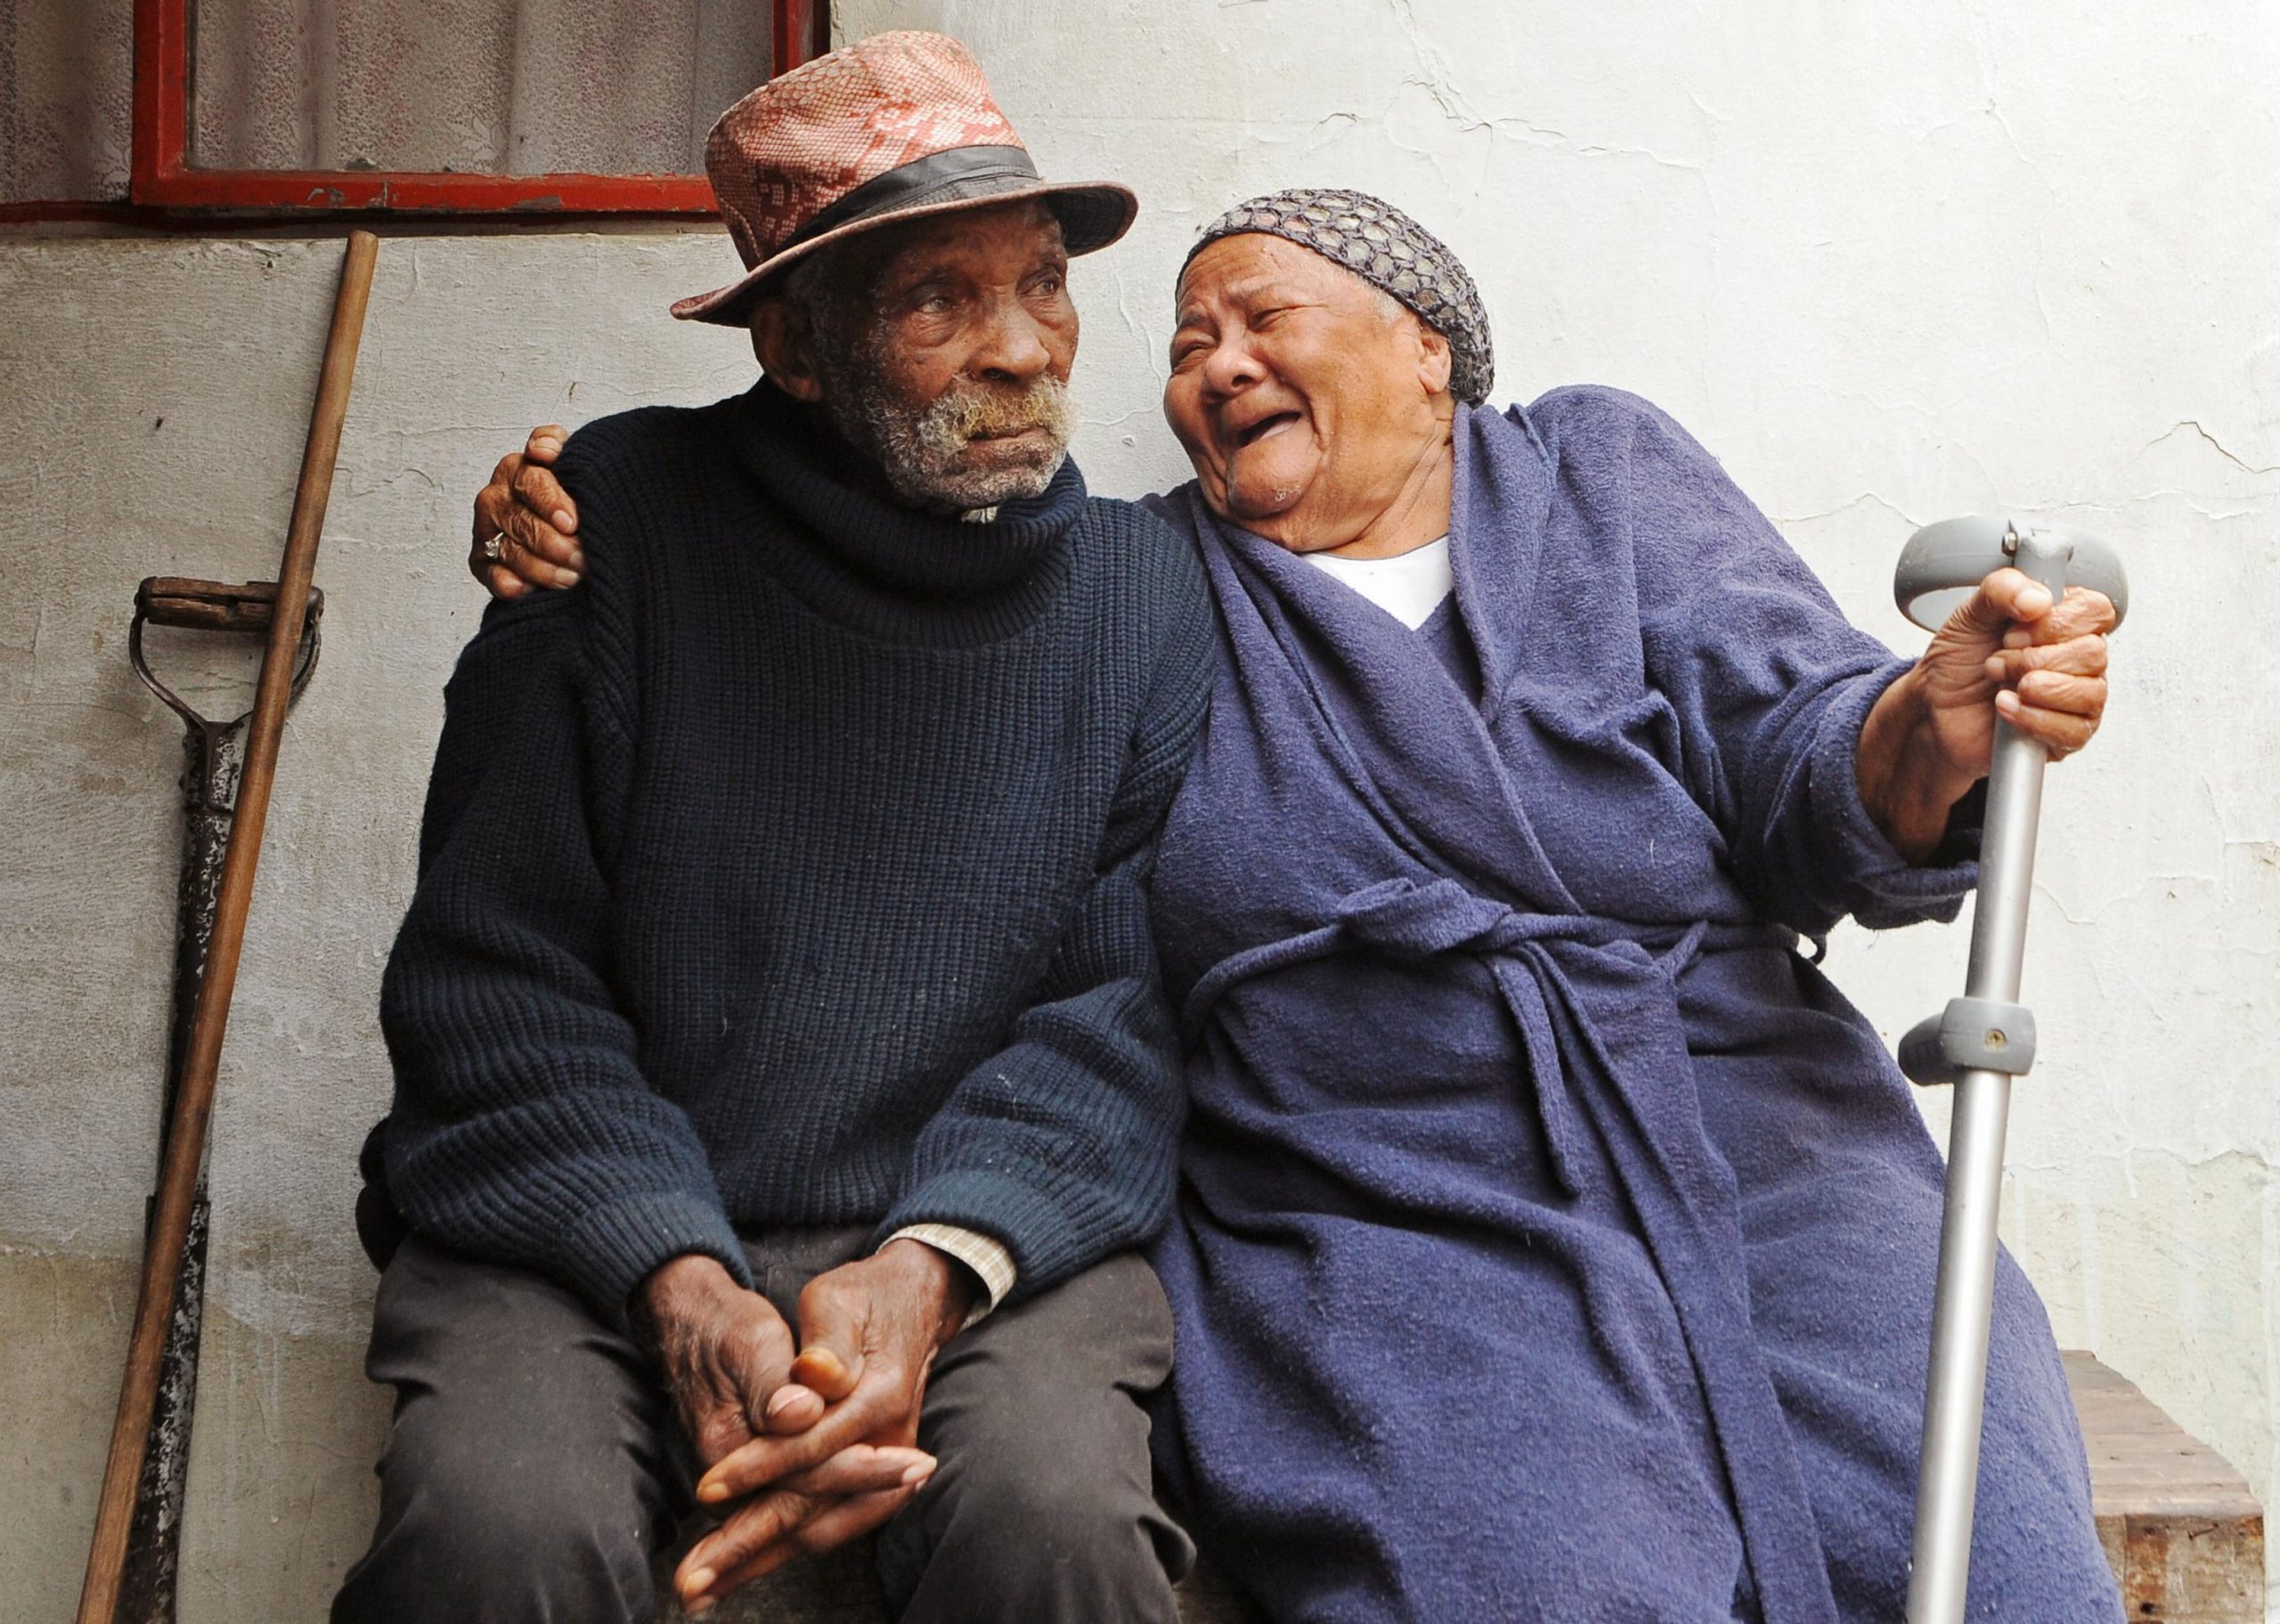 Morre na África do Sul o atual 'homem mais velho do mundo'